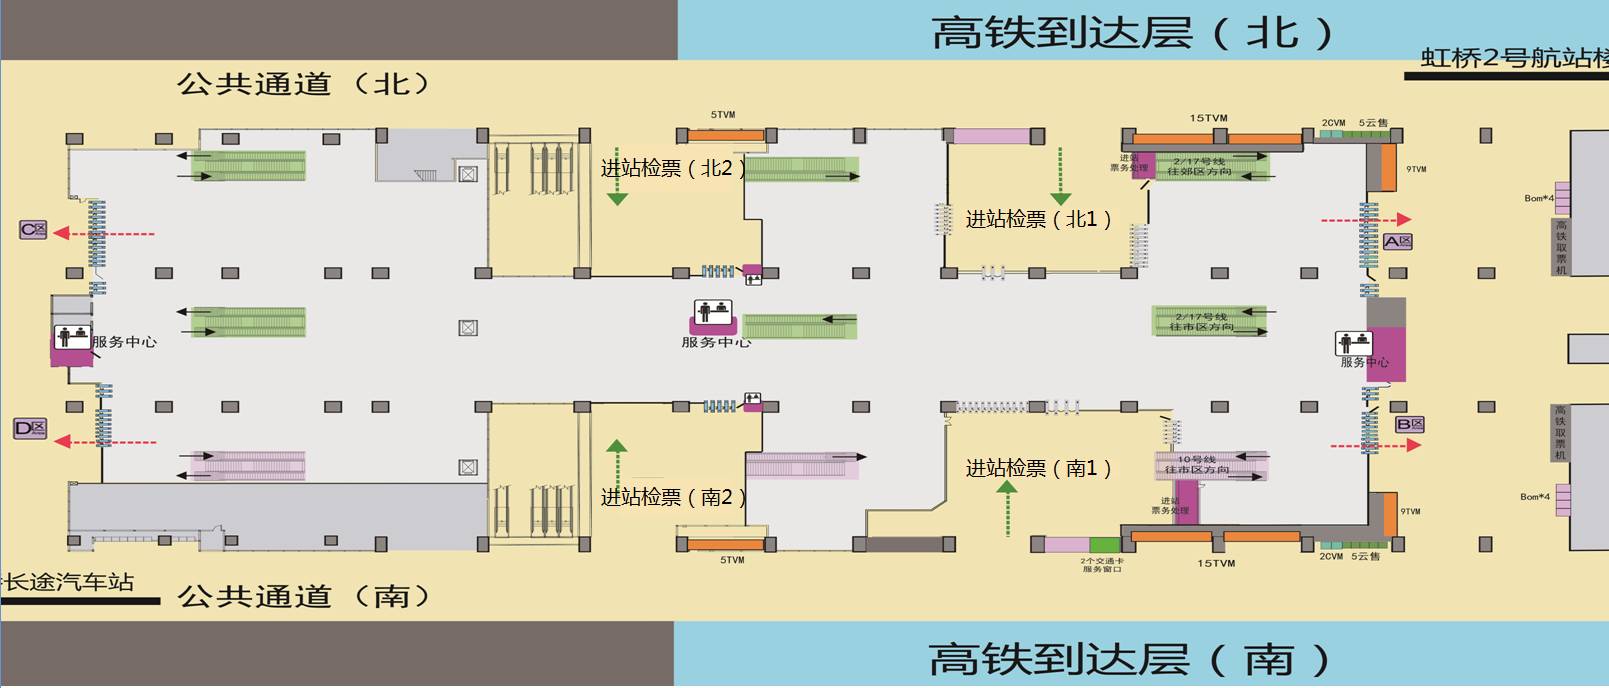 现上海地铁虹桥火车站站厅进站图